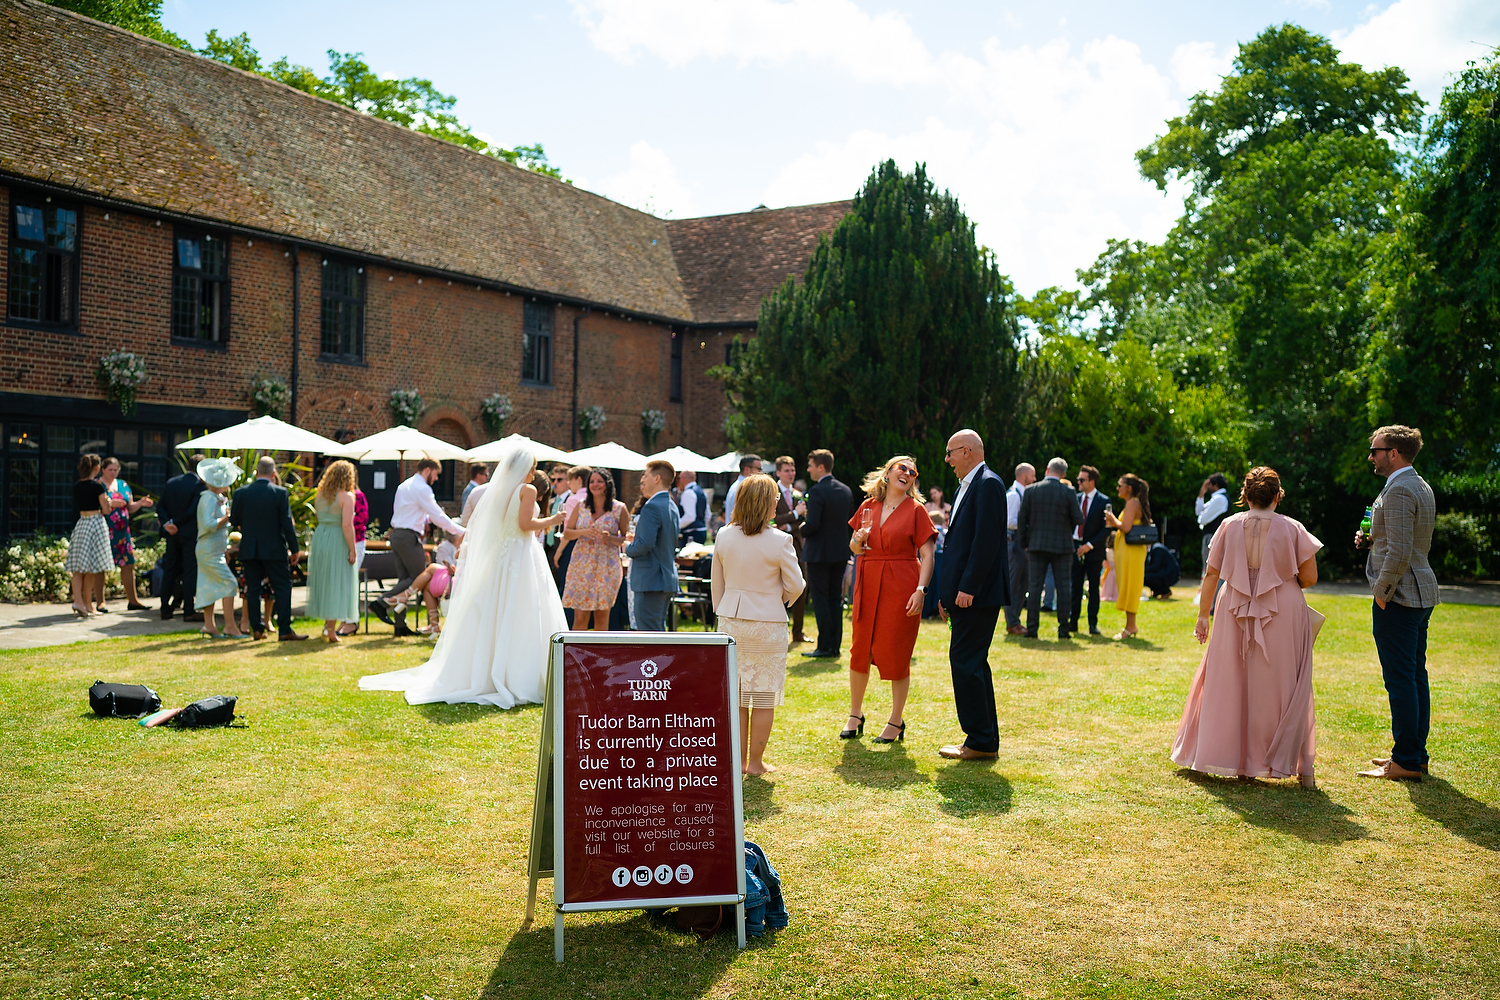 Tudor Barn Eltham wedding reception